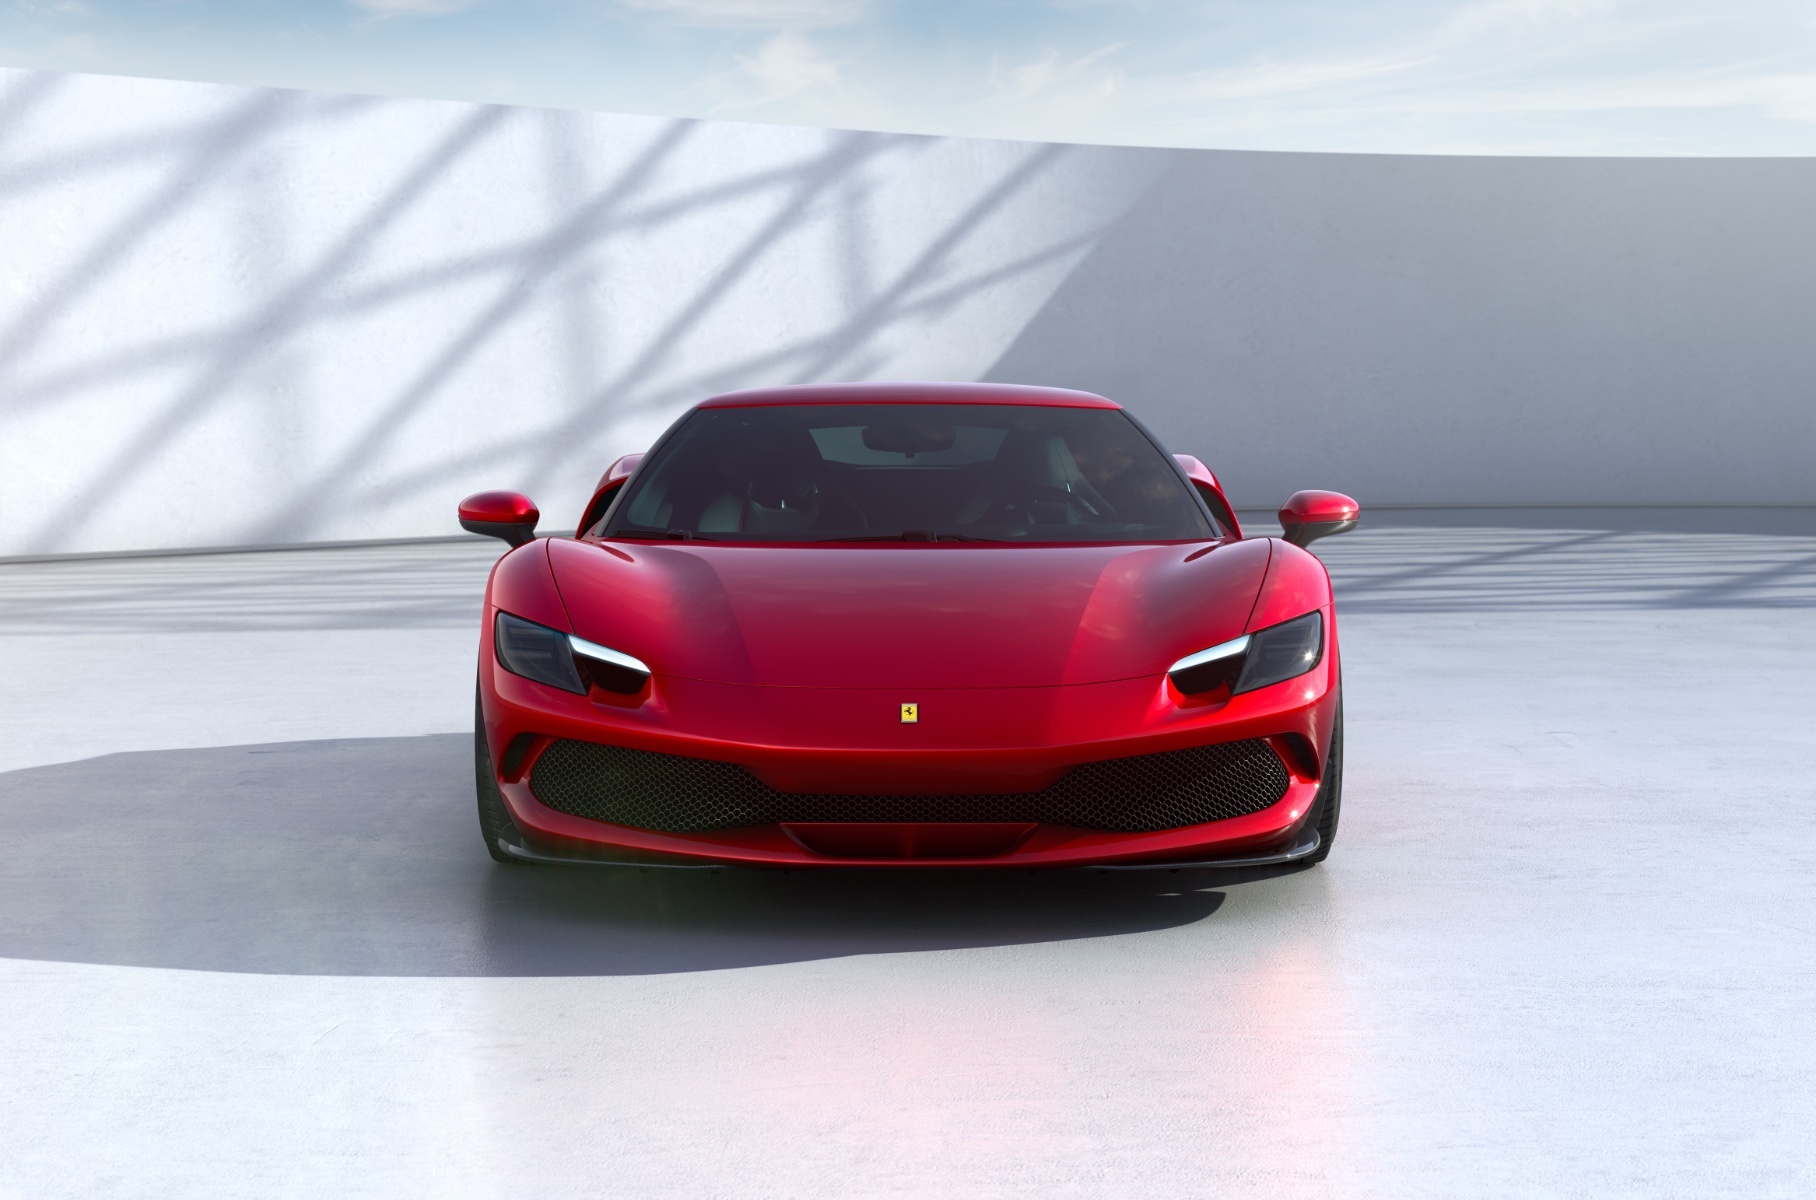 Ferrari представила первый дорожный суперкар с двигателем V6